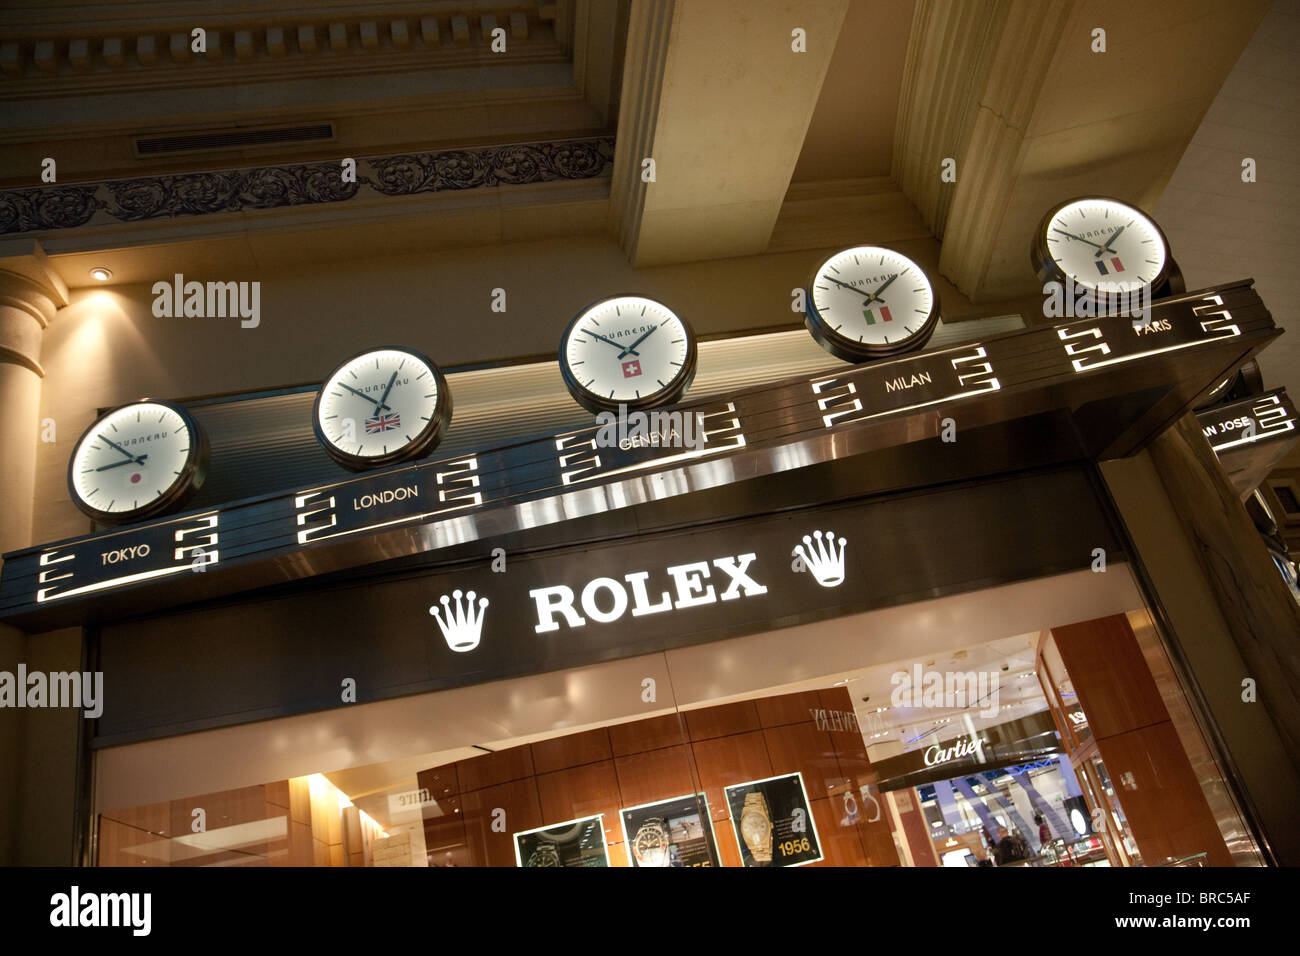 rolex forum shops